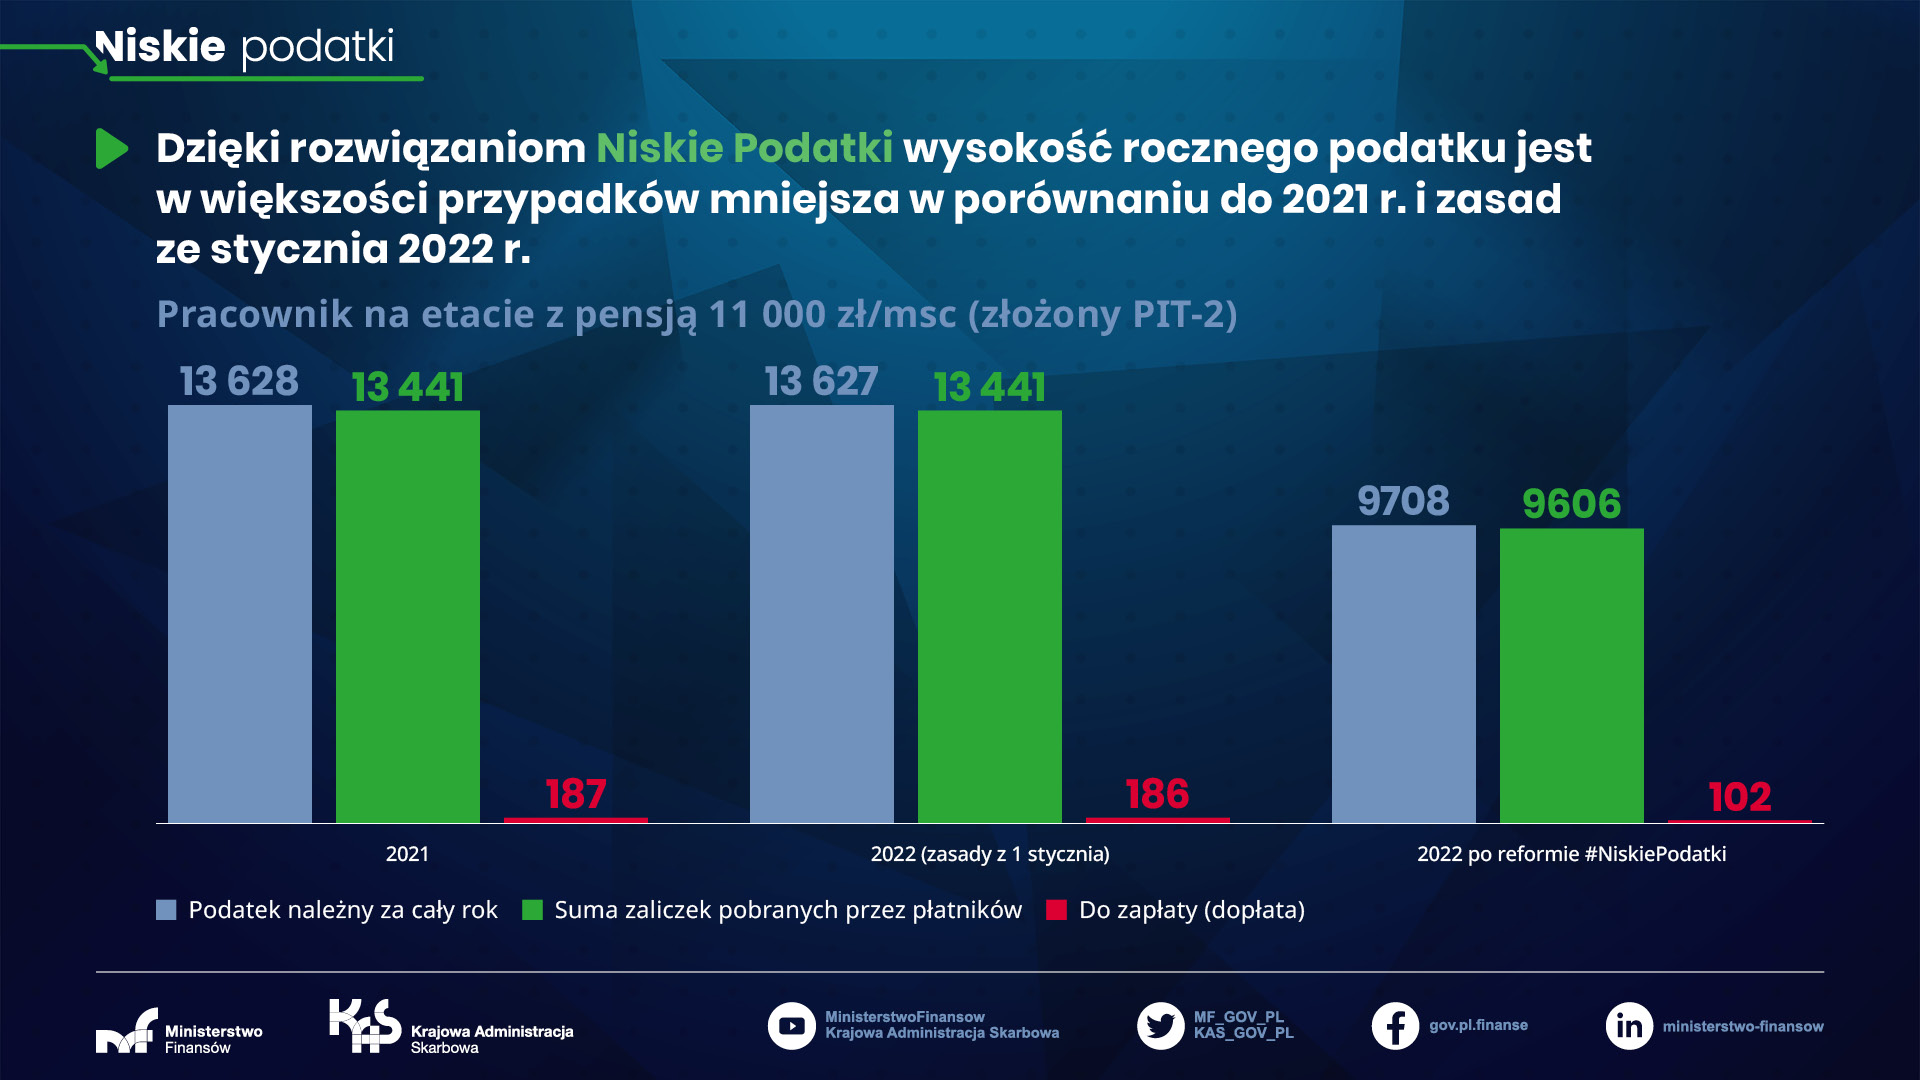 Niskie podatki - pracownik na etacie z pensją 11 000 zł/msc (złożony PIT-2)